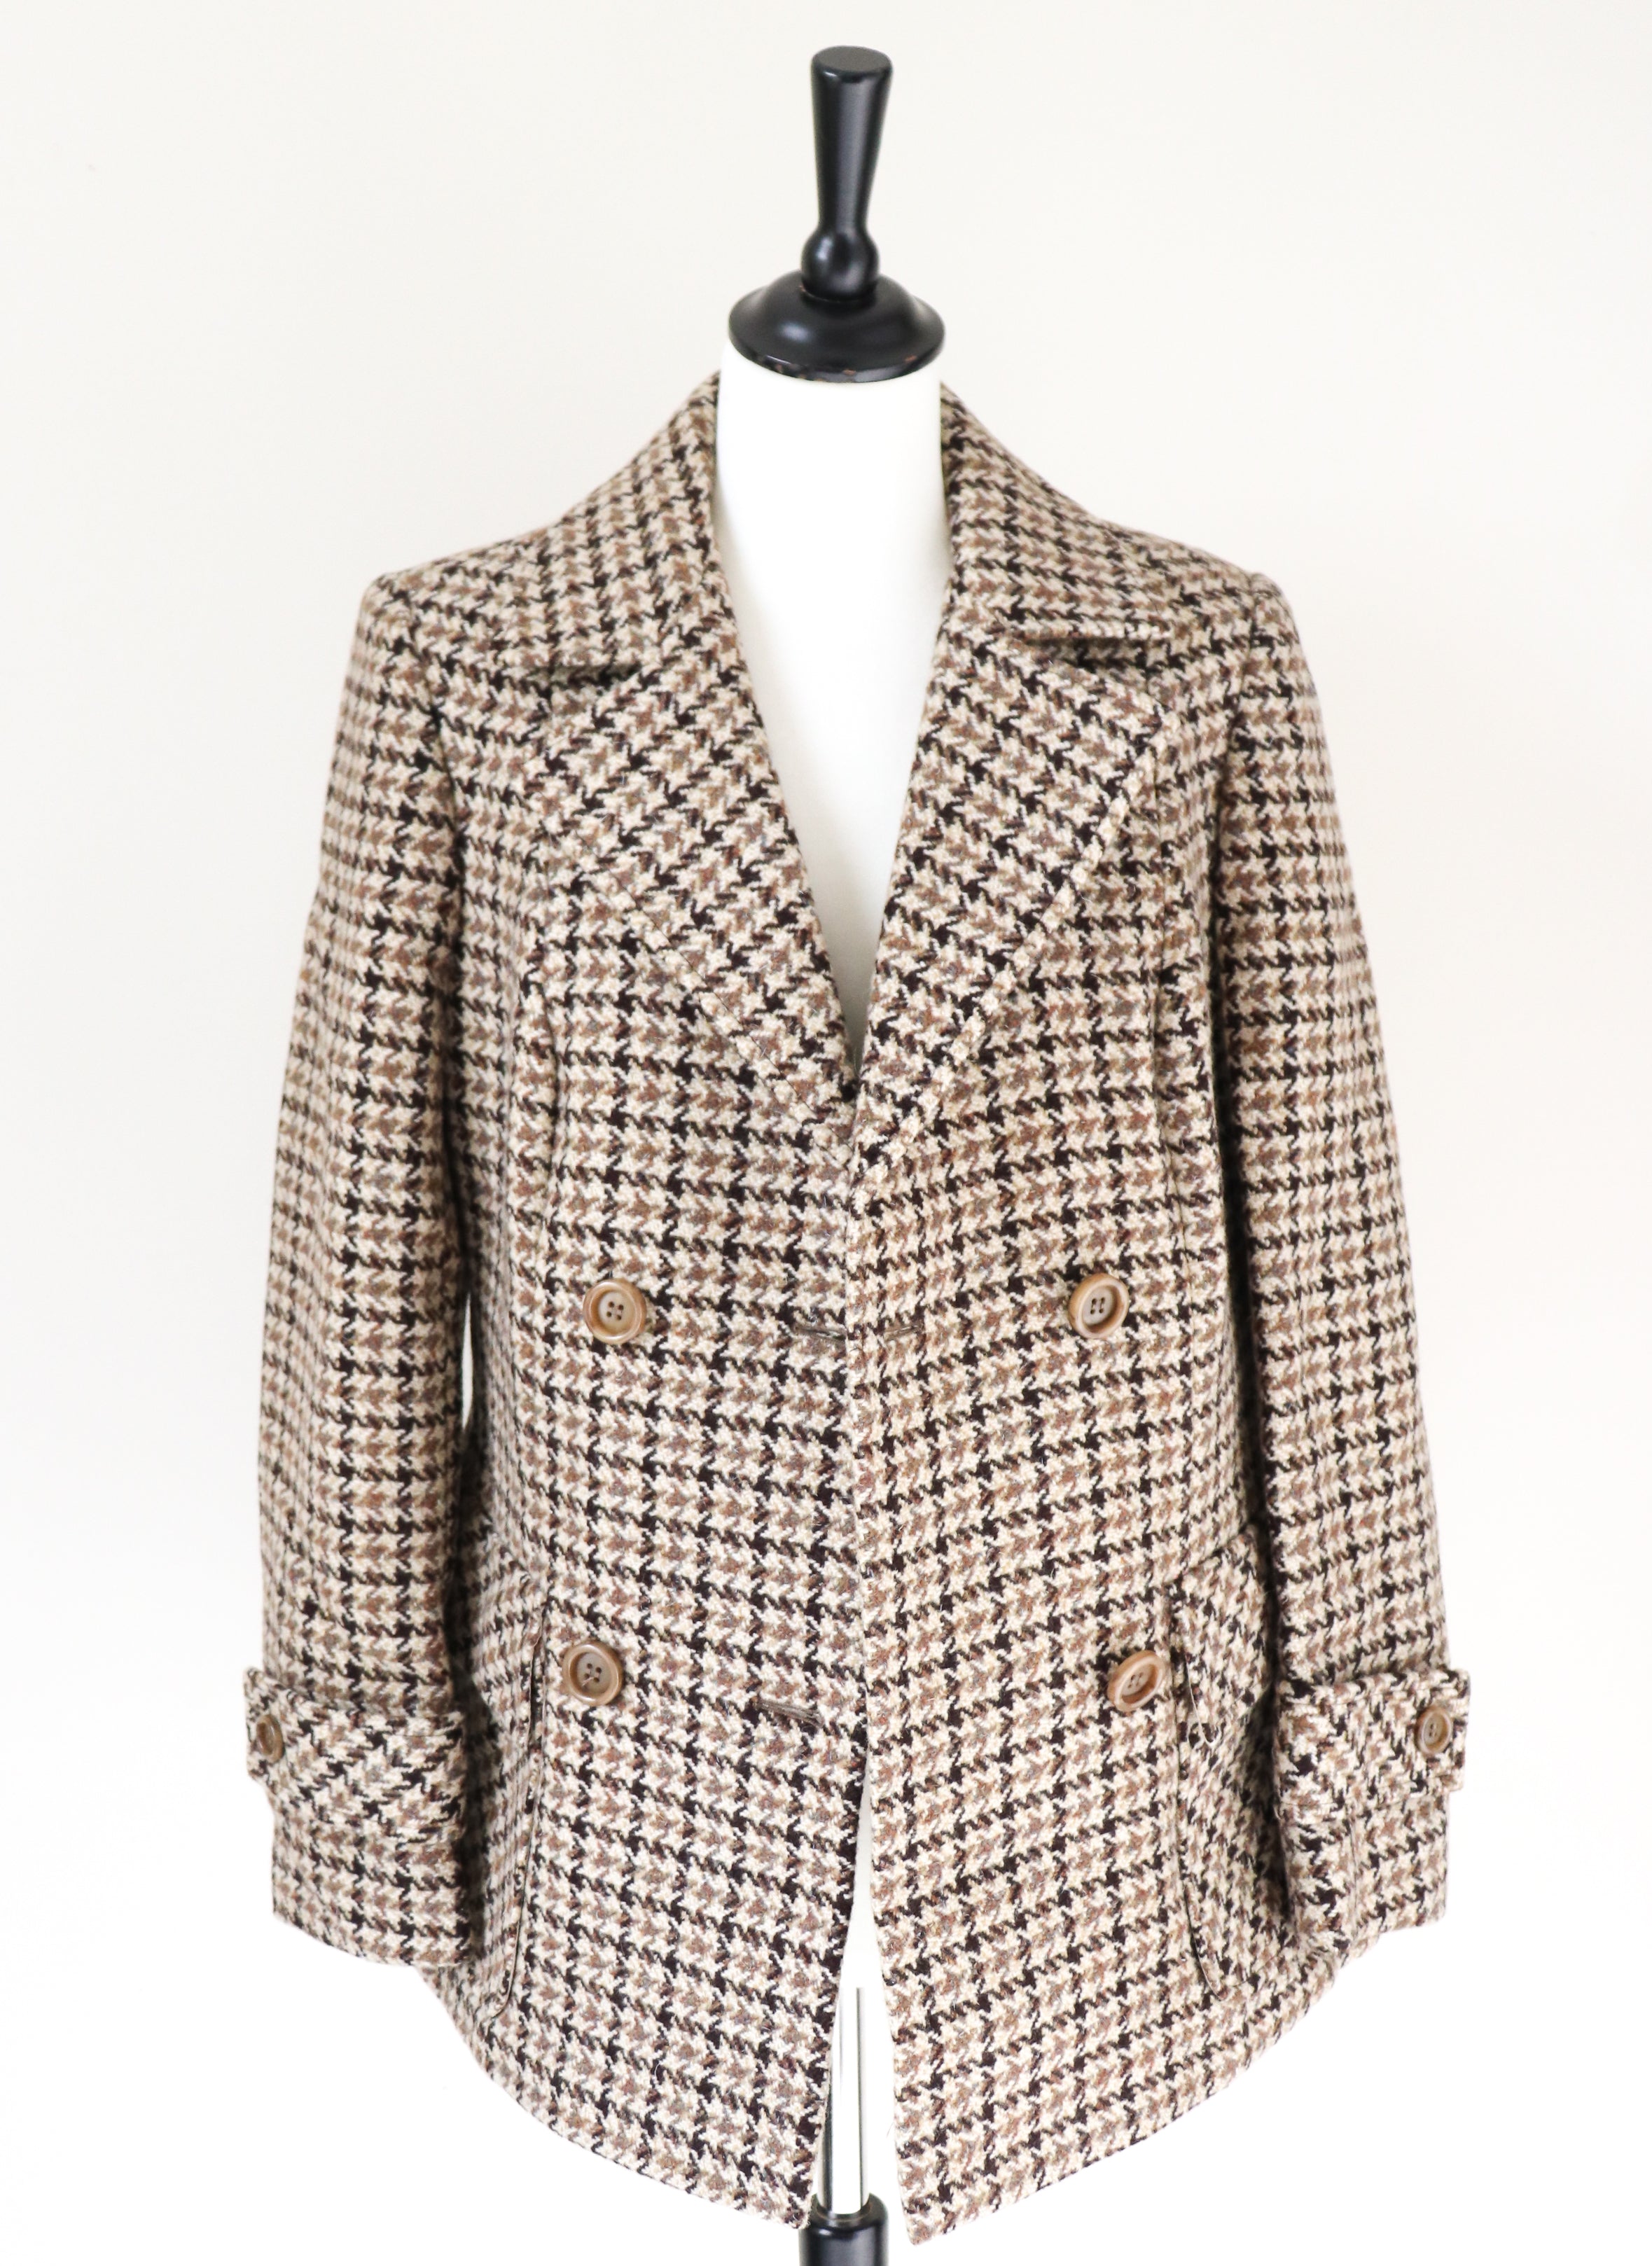 Heavy Pea Coat  Jacket - Brown / Beige Check - Wool - Vintage - M / UK 12